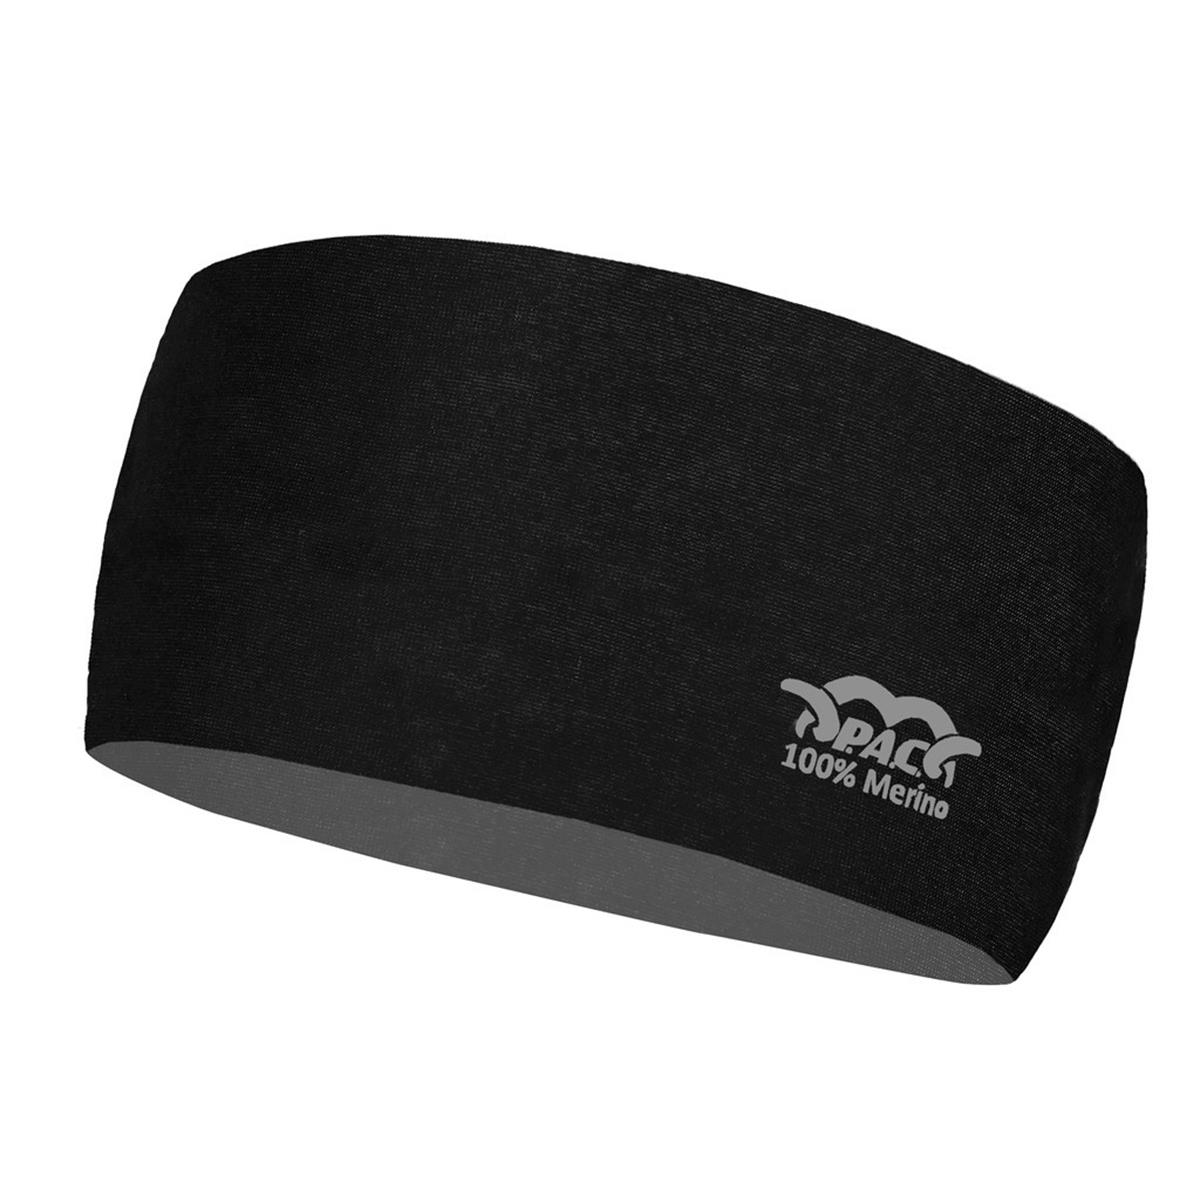 Total | Merino SAM\'s Black Headband PAC